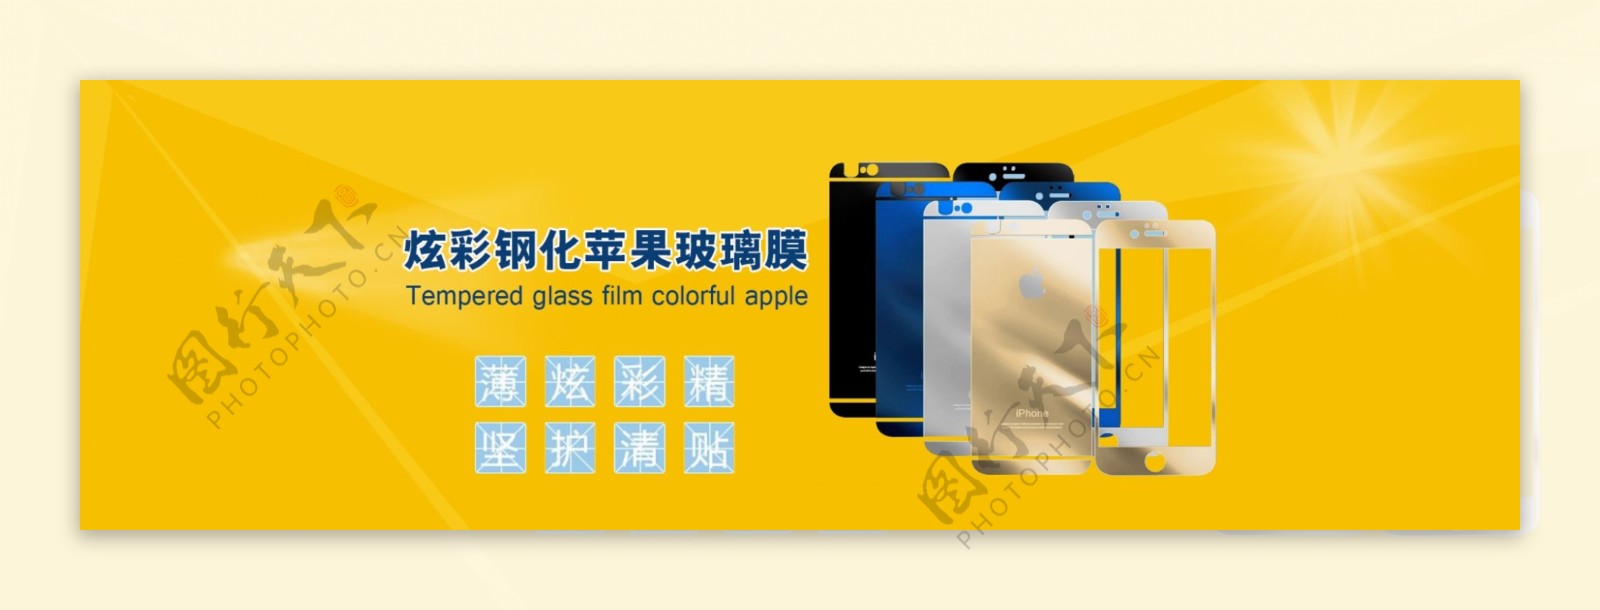 苹果手机钢化膜淘宝海报素材手机数码产品类